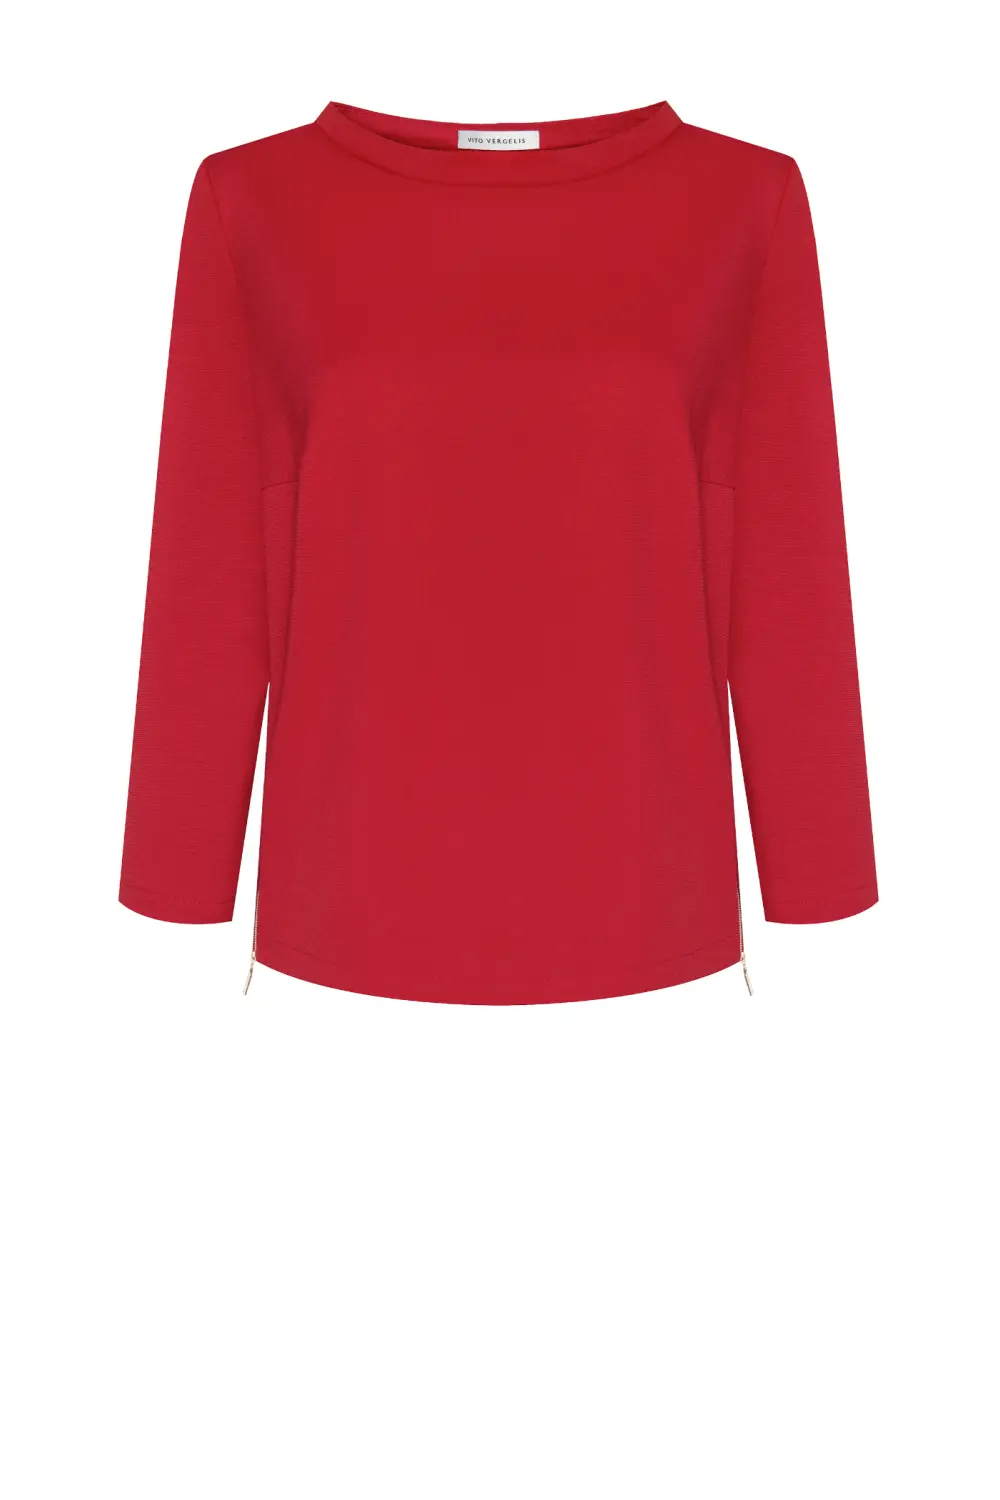 Czerwona bluza damska ze stójką i suwakami pobokach. Bluza dzianinowa marki Vito Vergelis